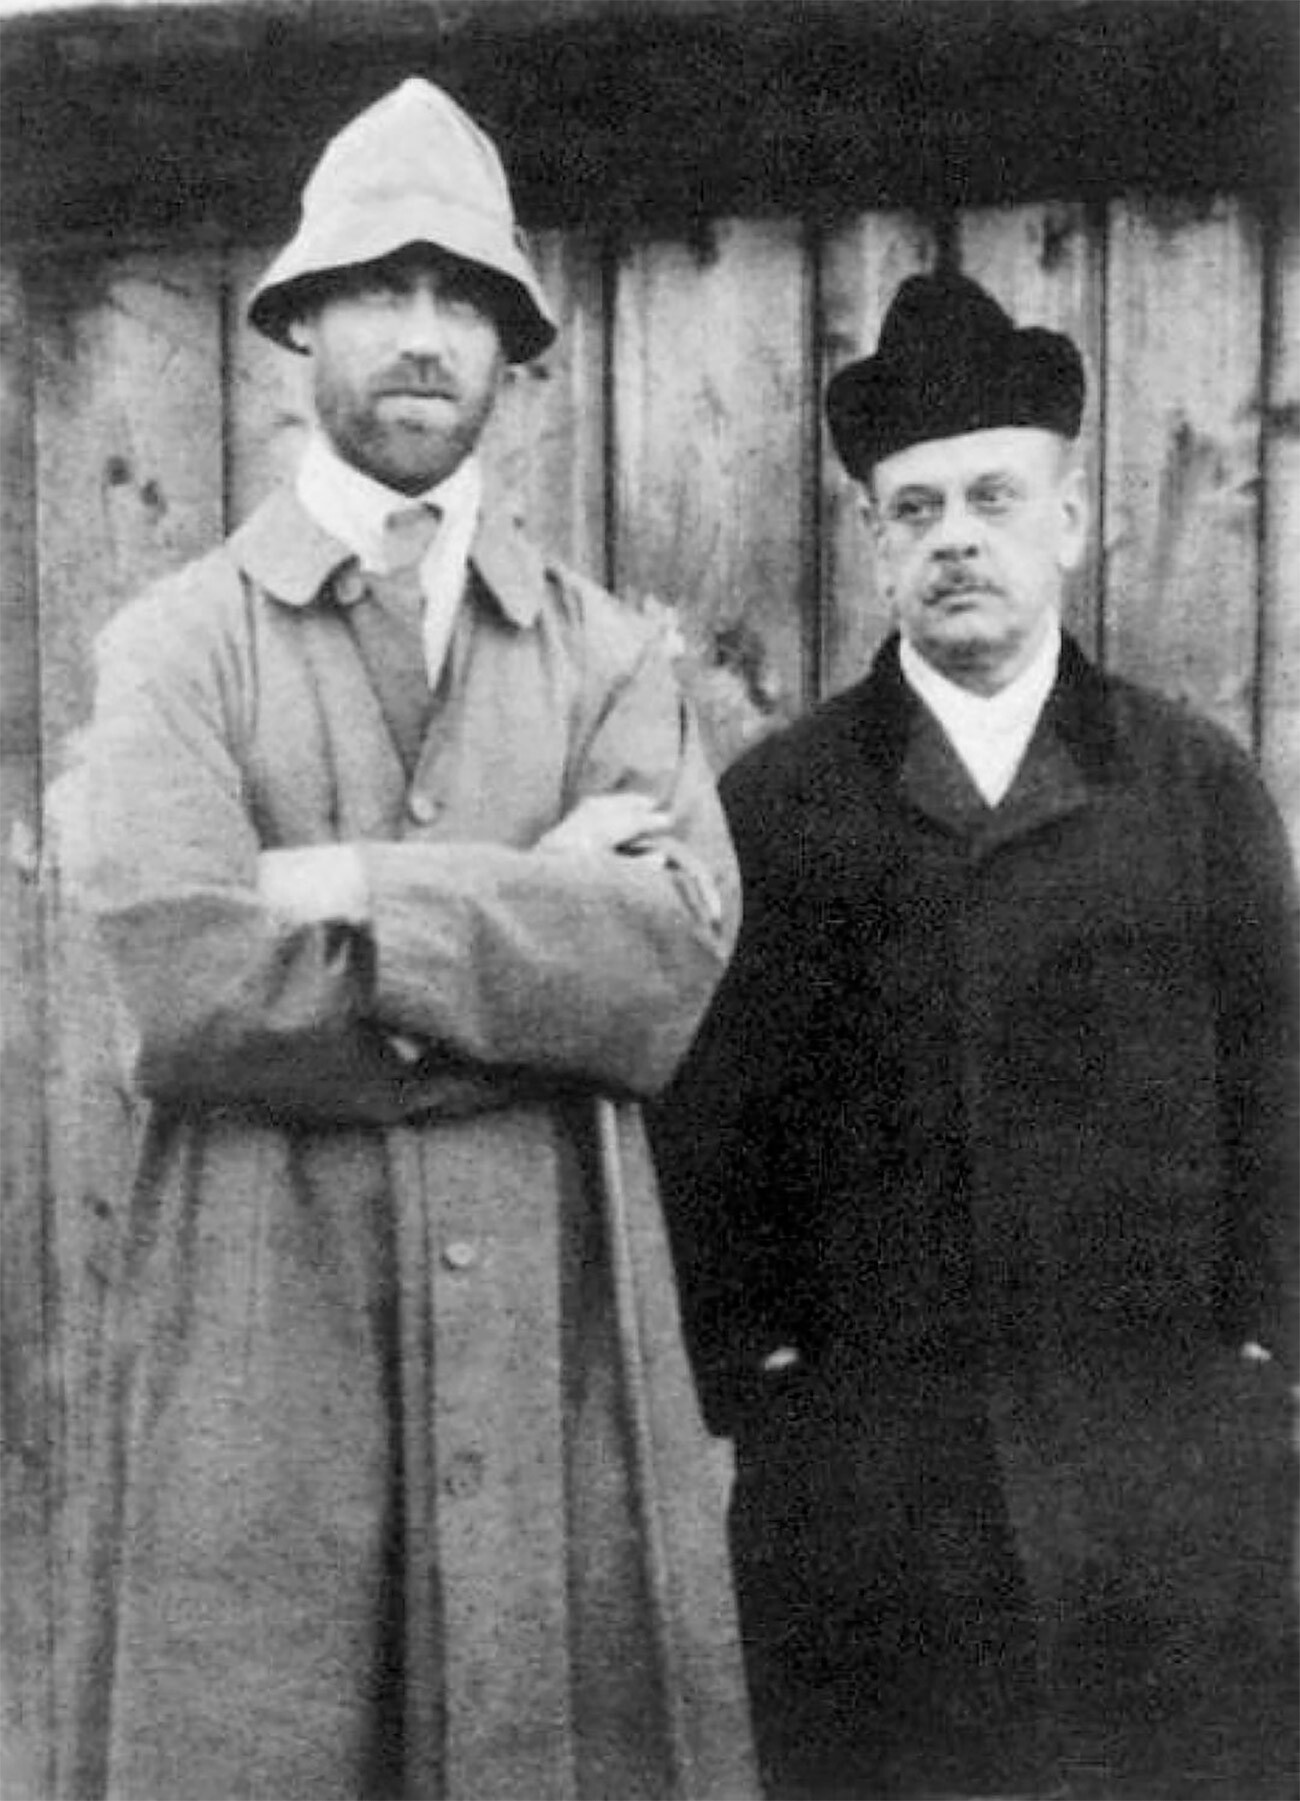 Miguel Aleksándrovich (a la izquierda) y P. Znamerovski fotografiados en Perm en abril de 1918 por un fotógrafo callejero. En el reverso de la foto Miguel Aleksándrovich escribió a mano 'Prisionero de Perm' y juró no afeitarse hasta ser liberado.